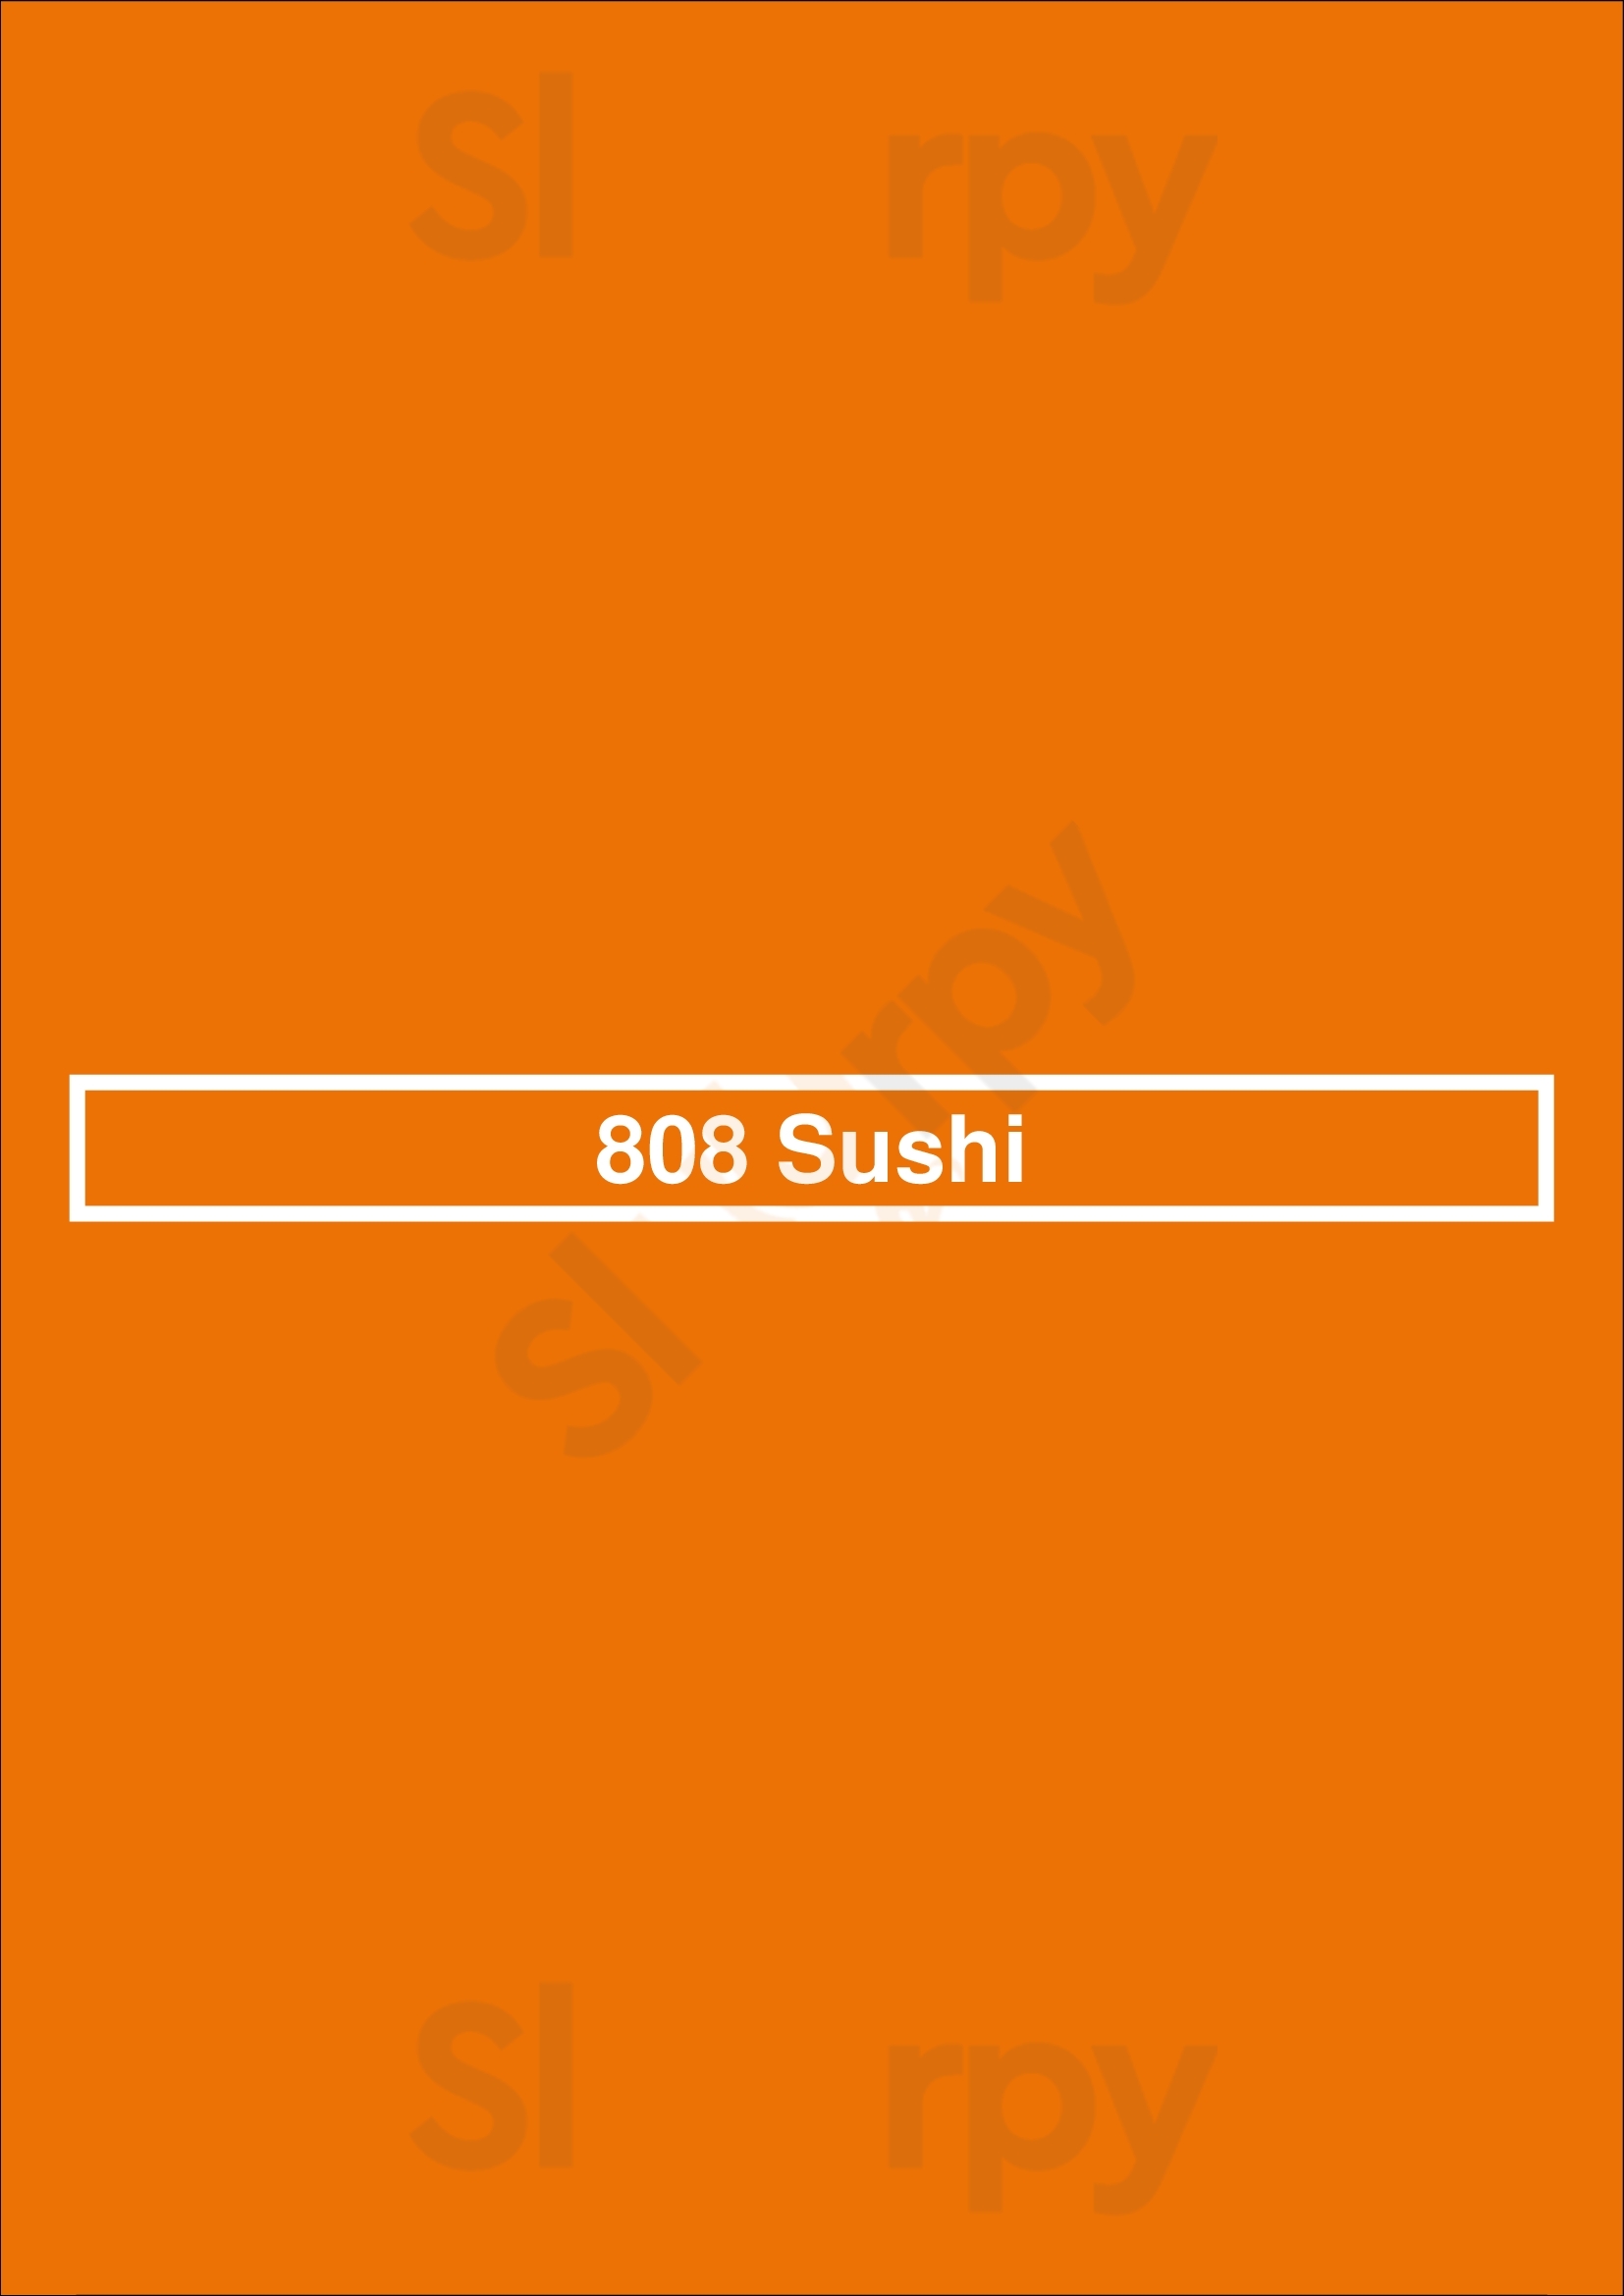 808 Sushi Las Vegas Menu - 1